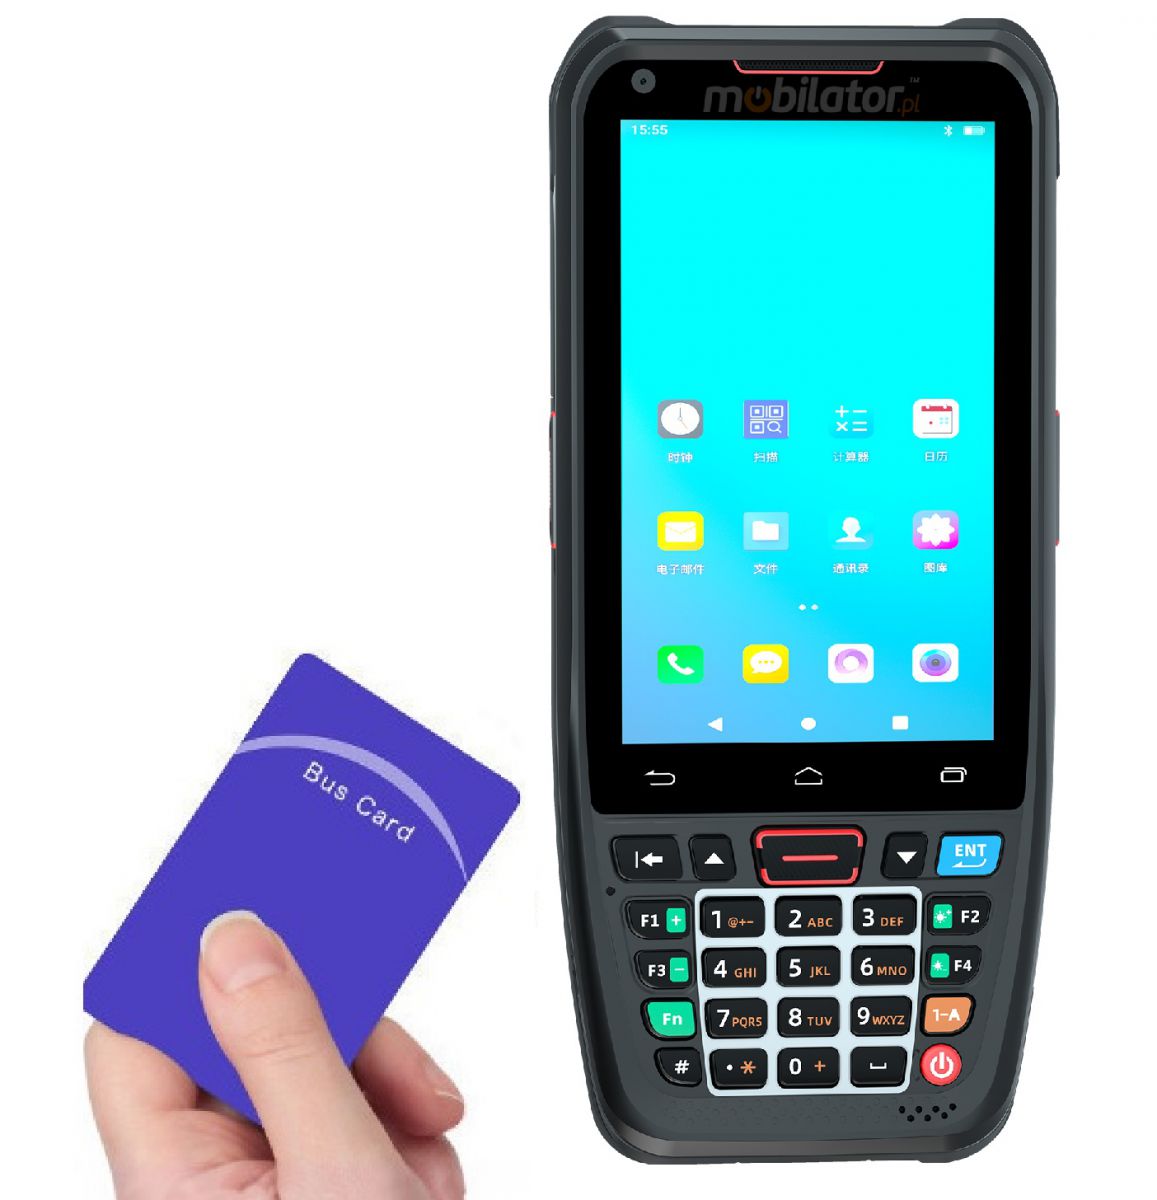 MobiPad L400N v.3 - Przemysowy kolektor danych z czterordzeniowym procesorem, NFC, Bluetooth, GPS oraz skanerem kodw 1D